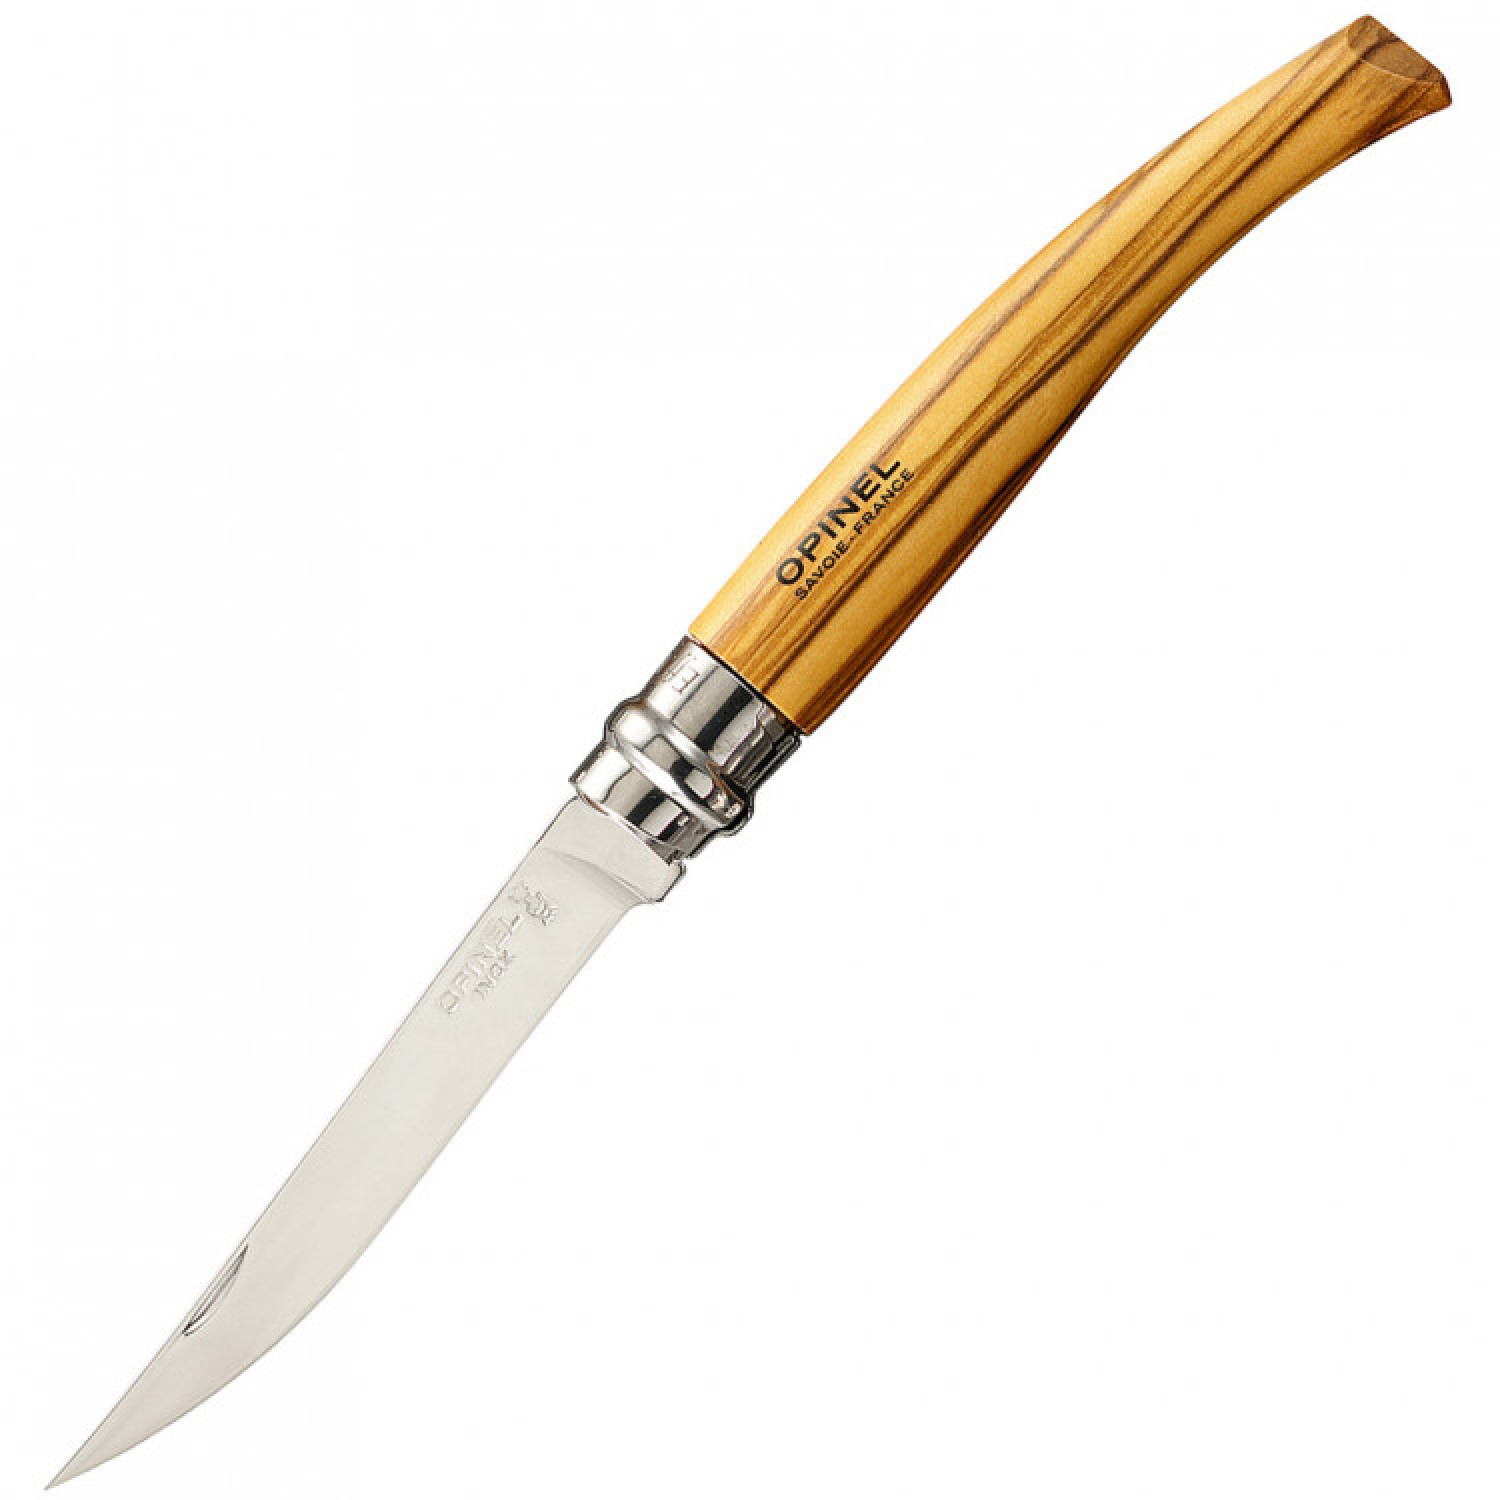 Нож складной филейный Opinel №8 VRI Folding Slim Olivewood, сталь Sandvik 12C27, рукоять из оливкового дерева, 001144